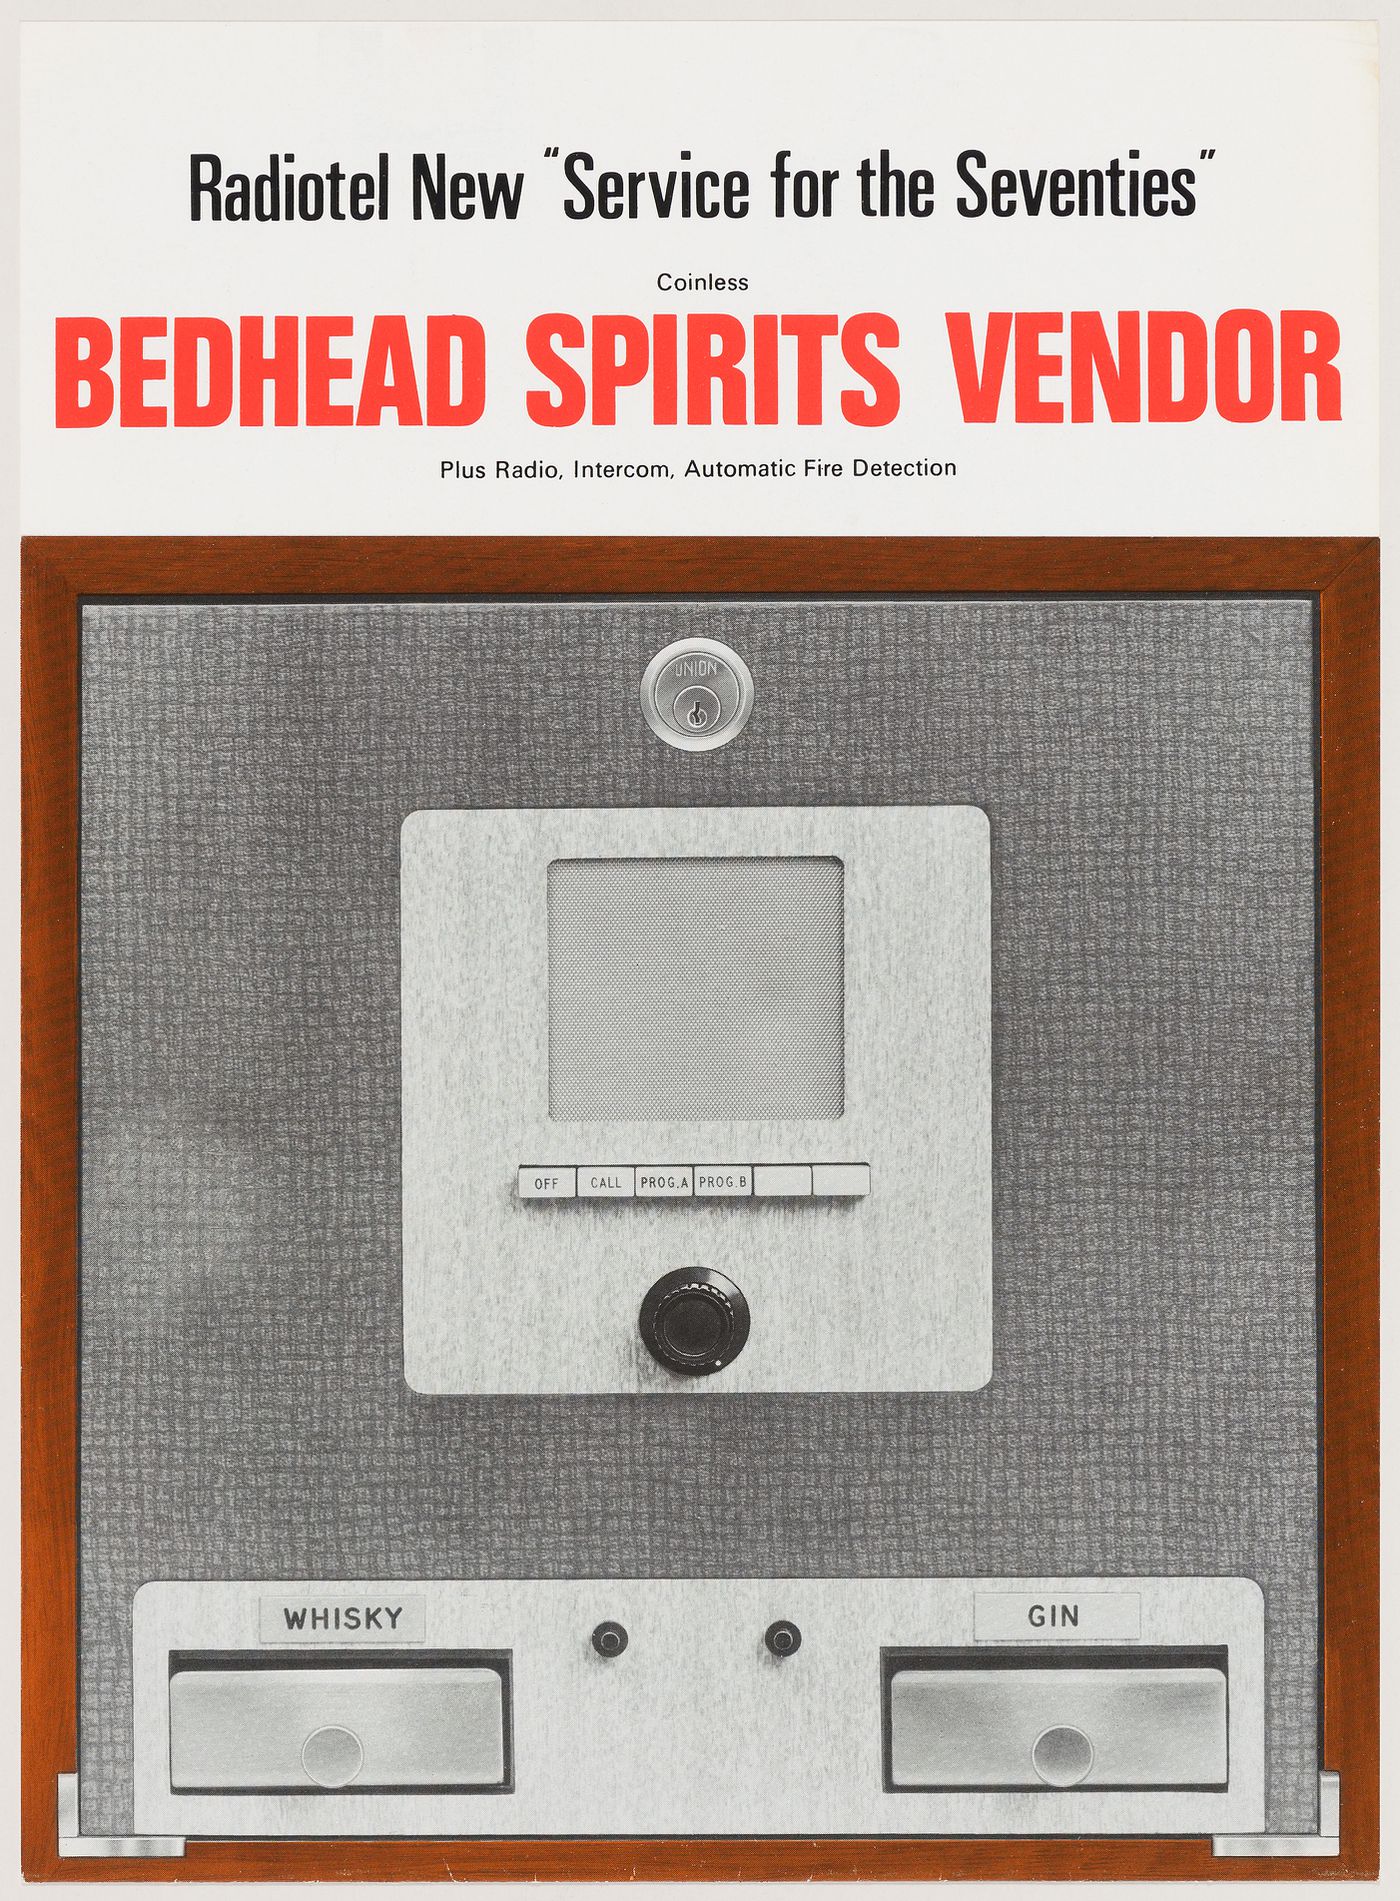 Promotional leaflet for Radiotel Bedhead Spirits Vendor